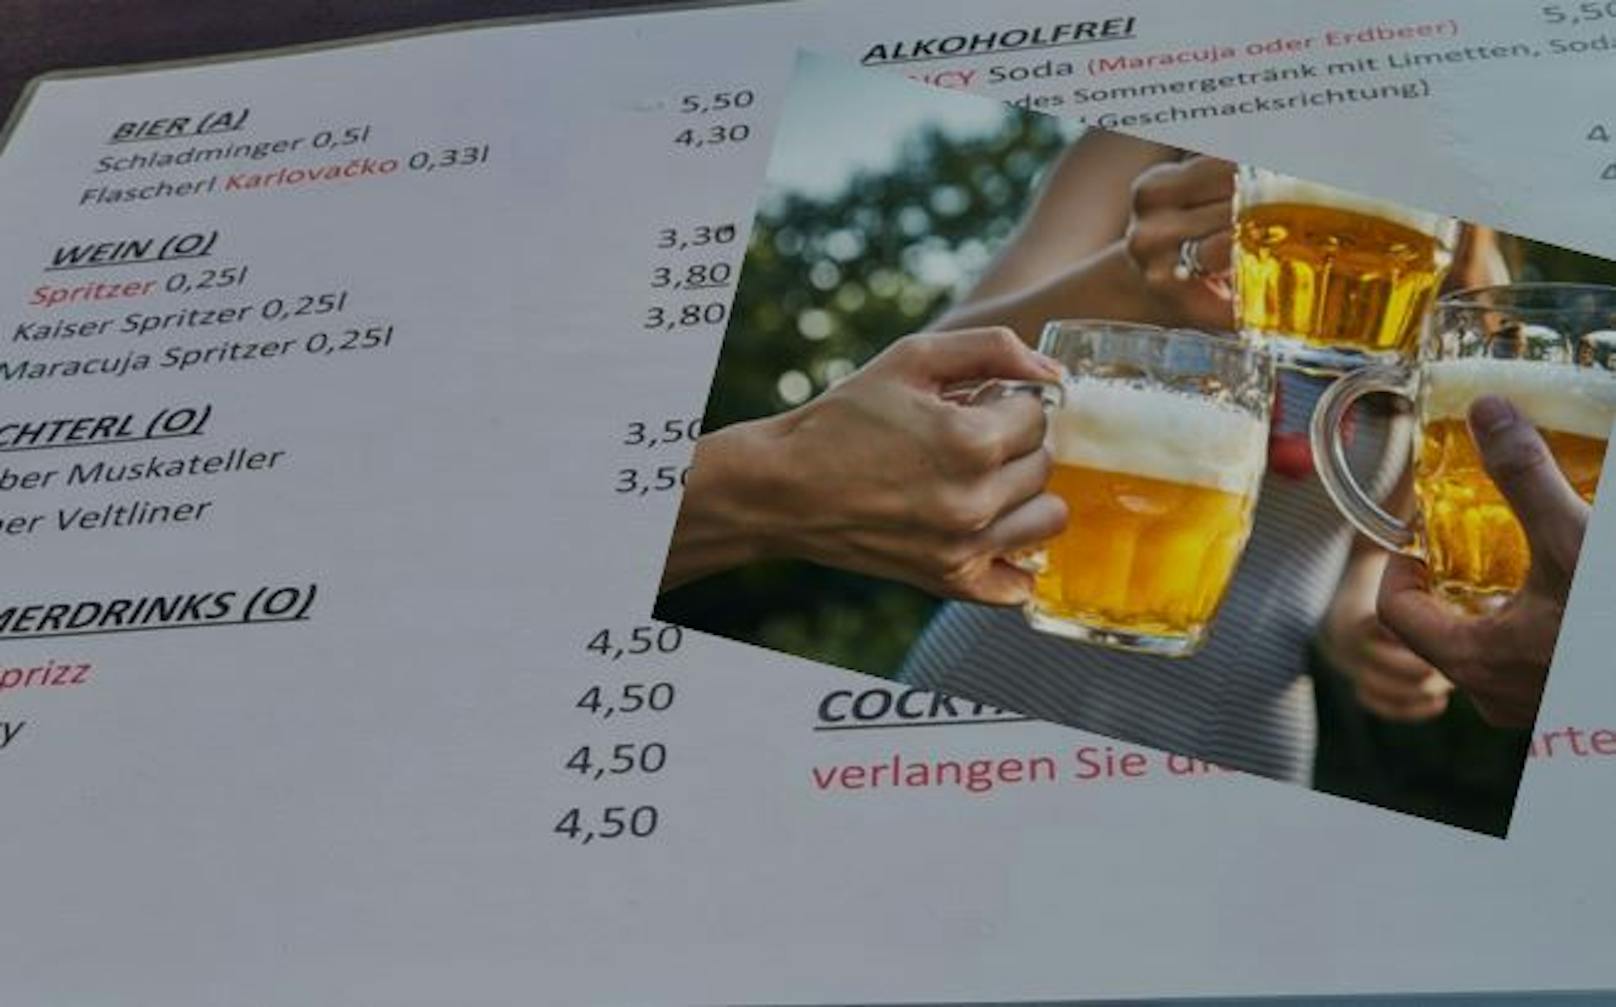 Die Preise für Bier und alkoholfreie Getränke sind fast identisch.